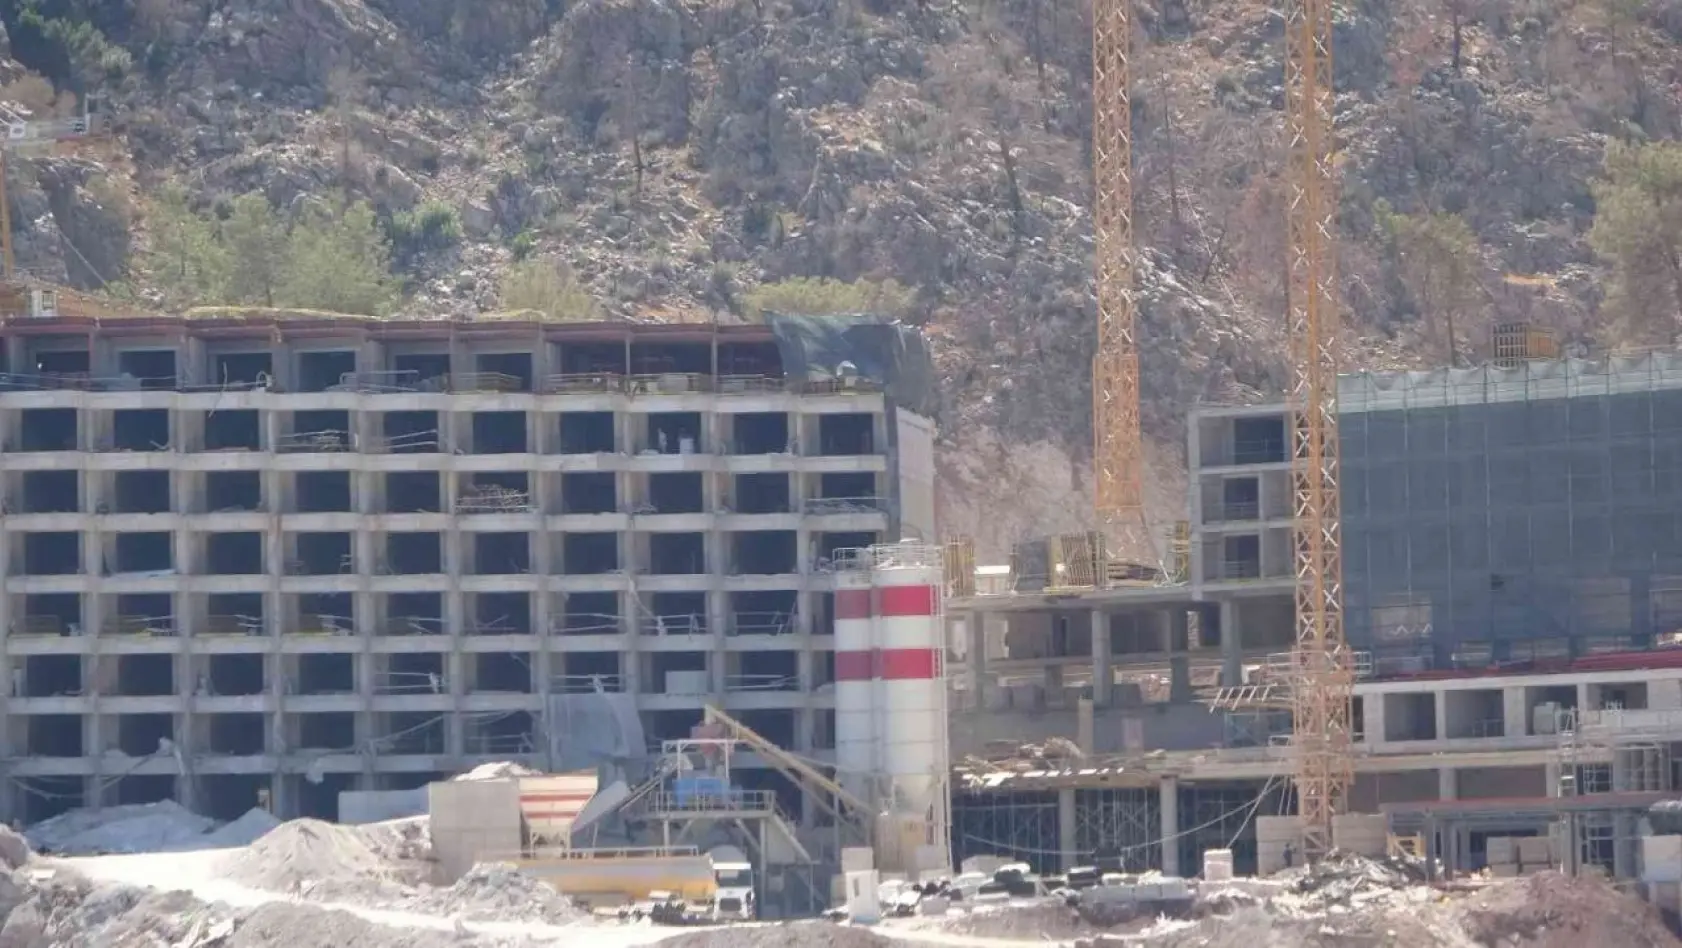 Mühürlenen otel inşaatı sürüyor